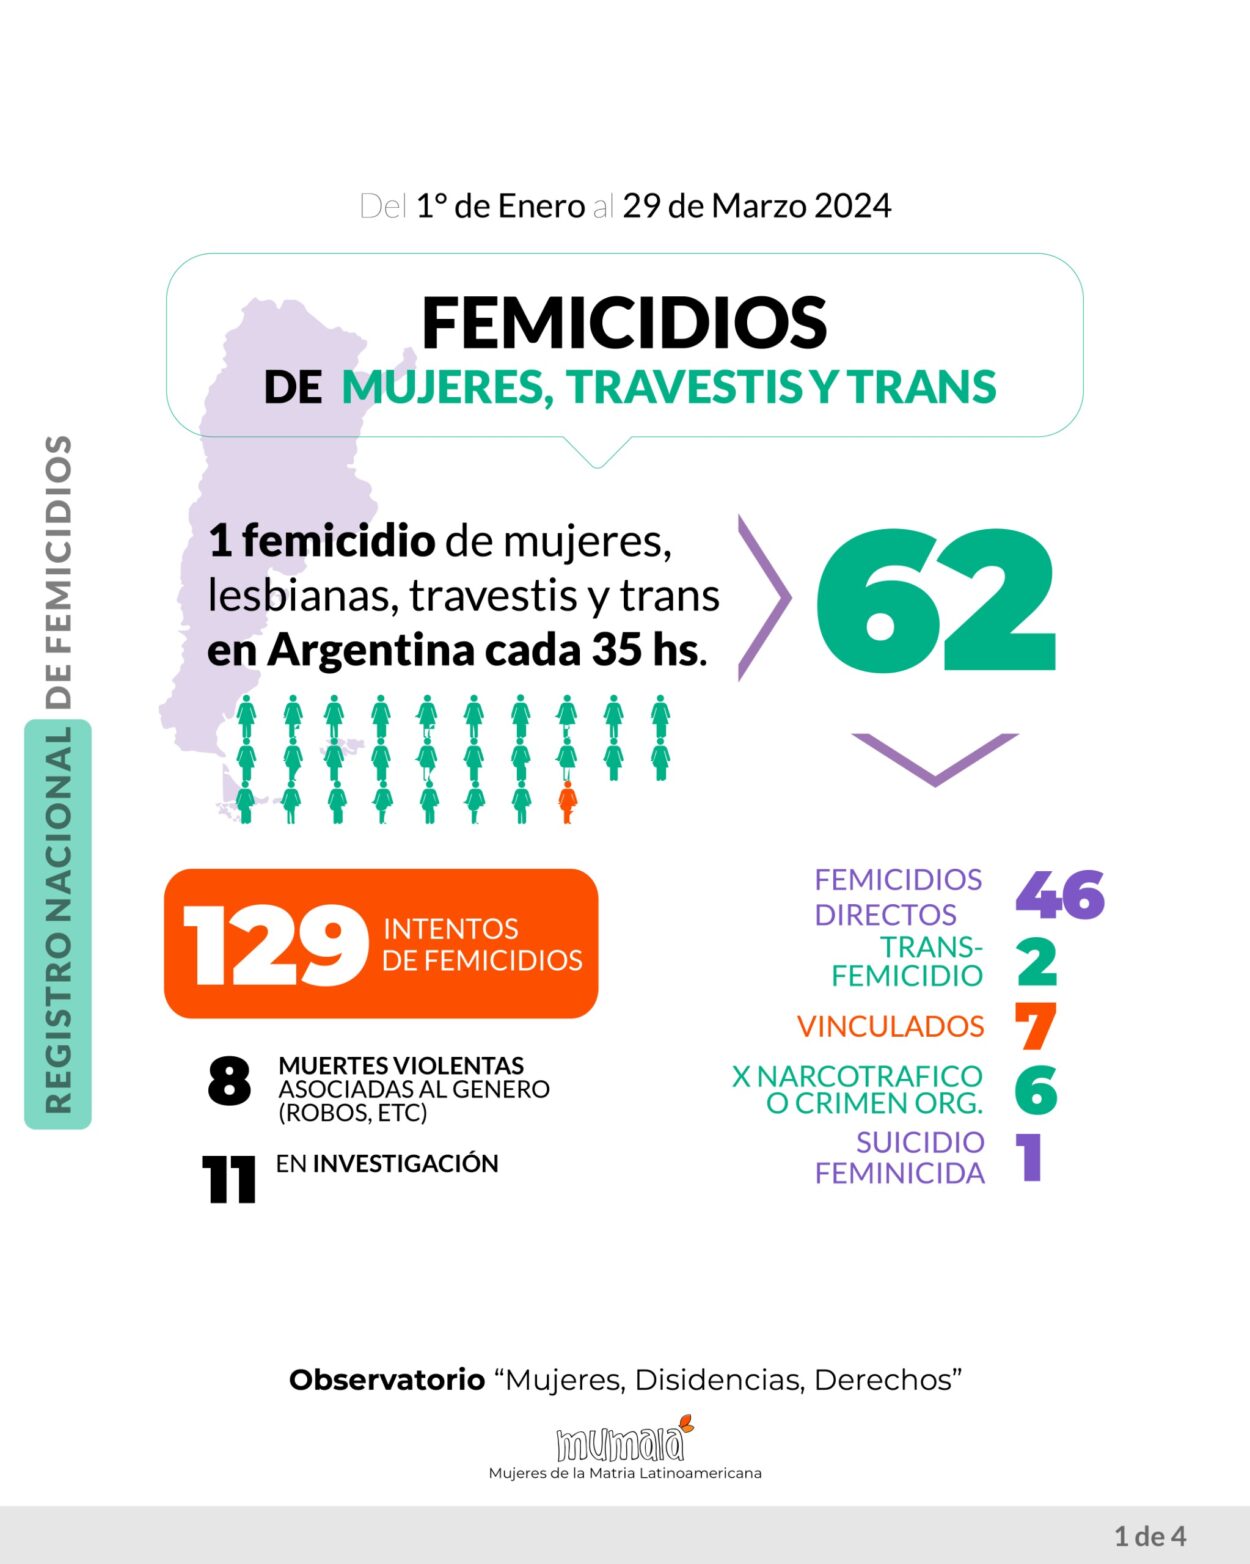 El Observatorio MuMaLa denunció que en 3 meses se han registrado 62 feminicidios, uno cada 35 horas imagen-73